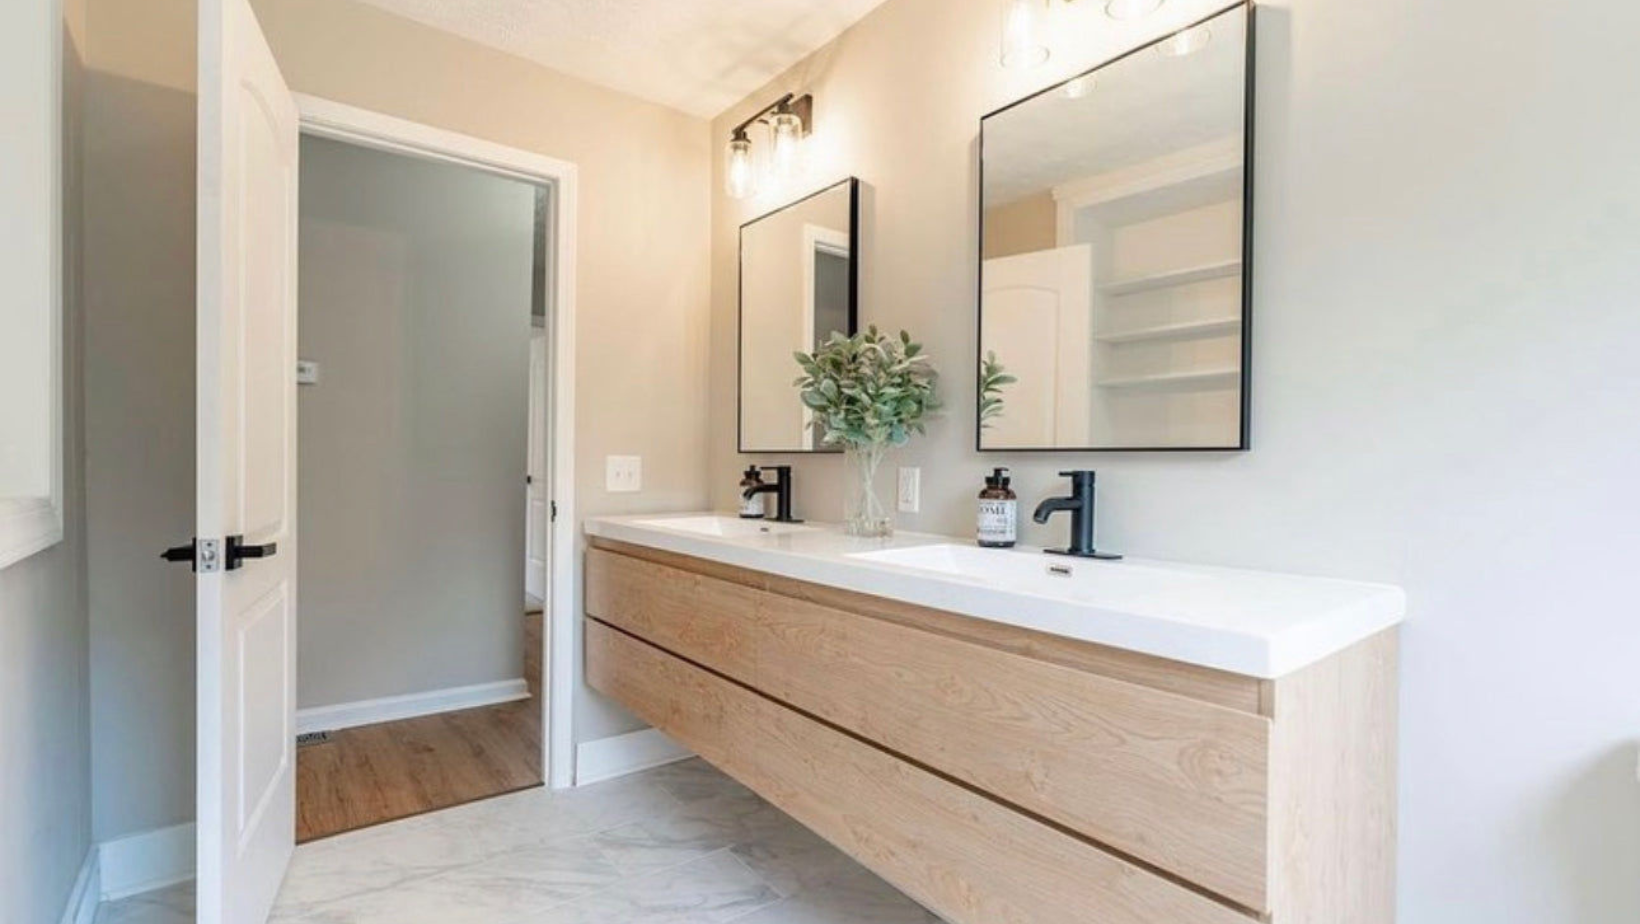 Who Installs Bathrooms Vanities and Sinks?